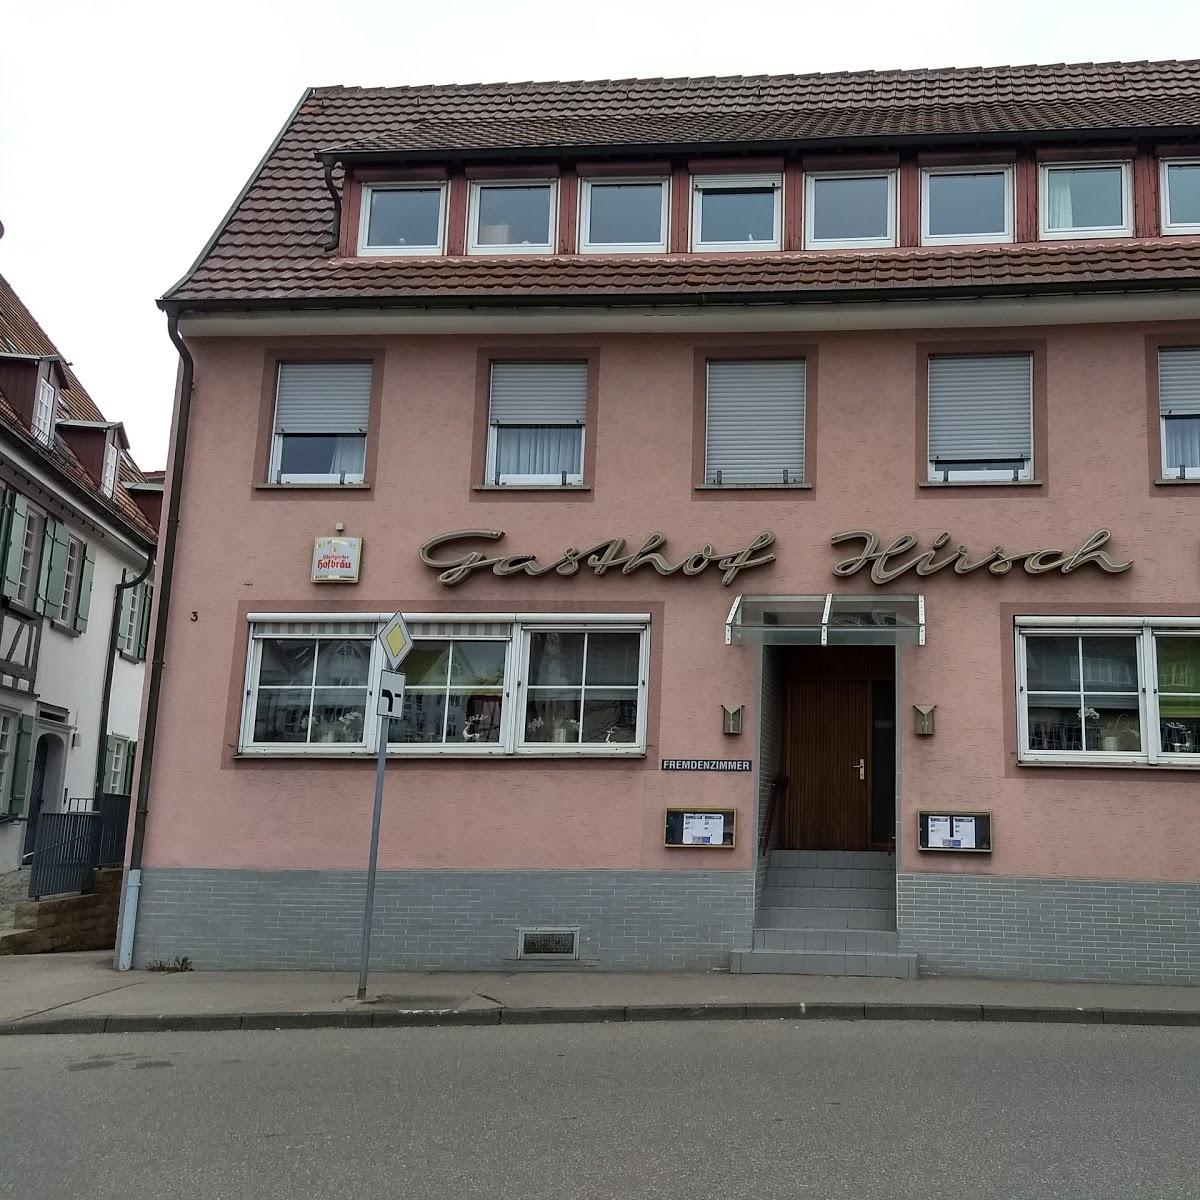 Restaurant "Gasthof Hirsch" in Magstadt